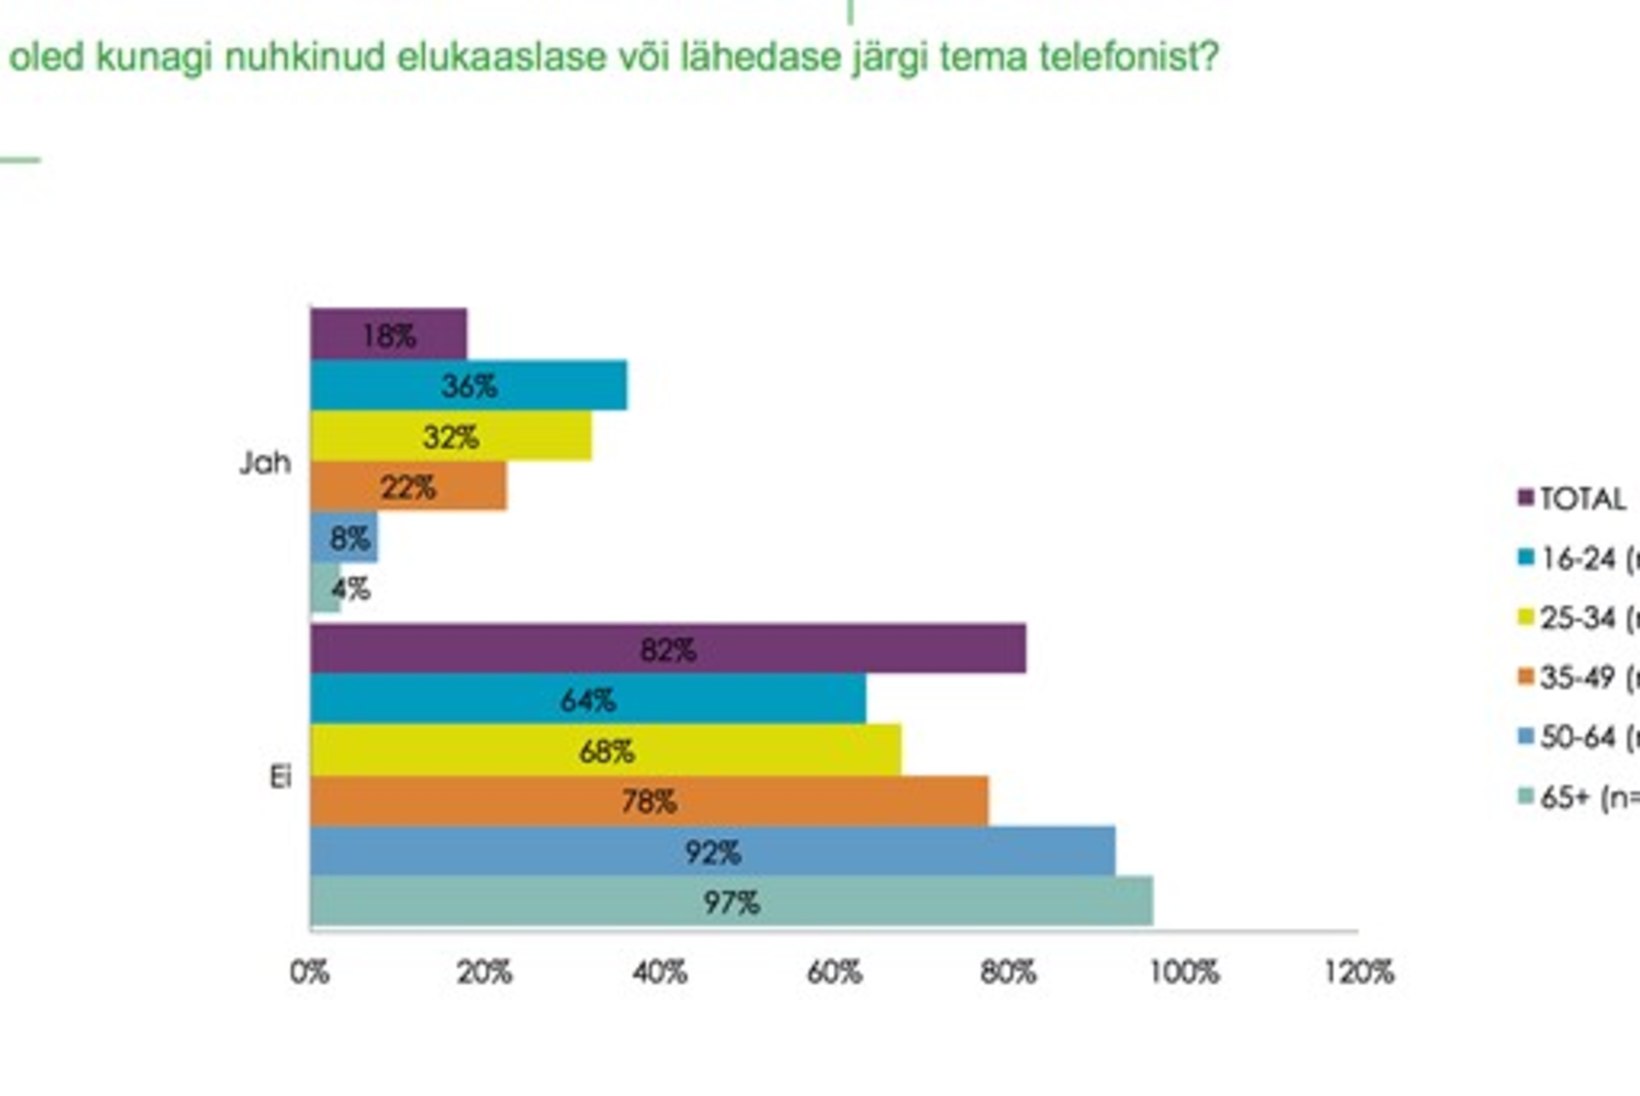 Uuring: eestlased nuhivad agaralt oma lähedaste telefonides